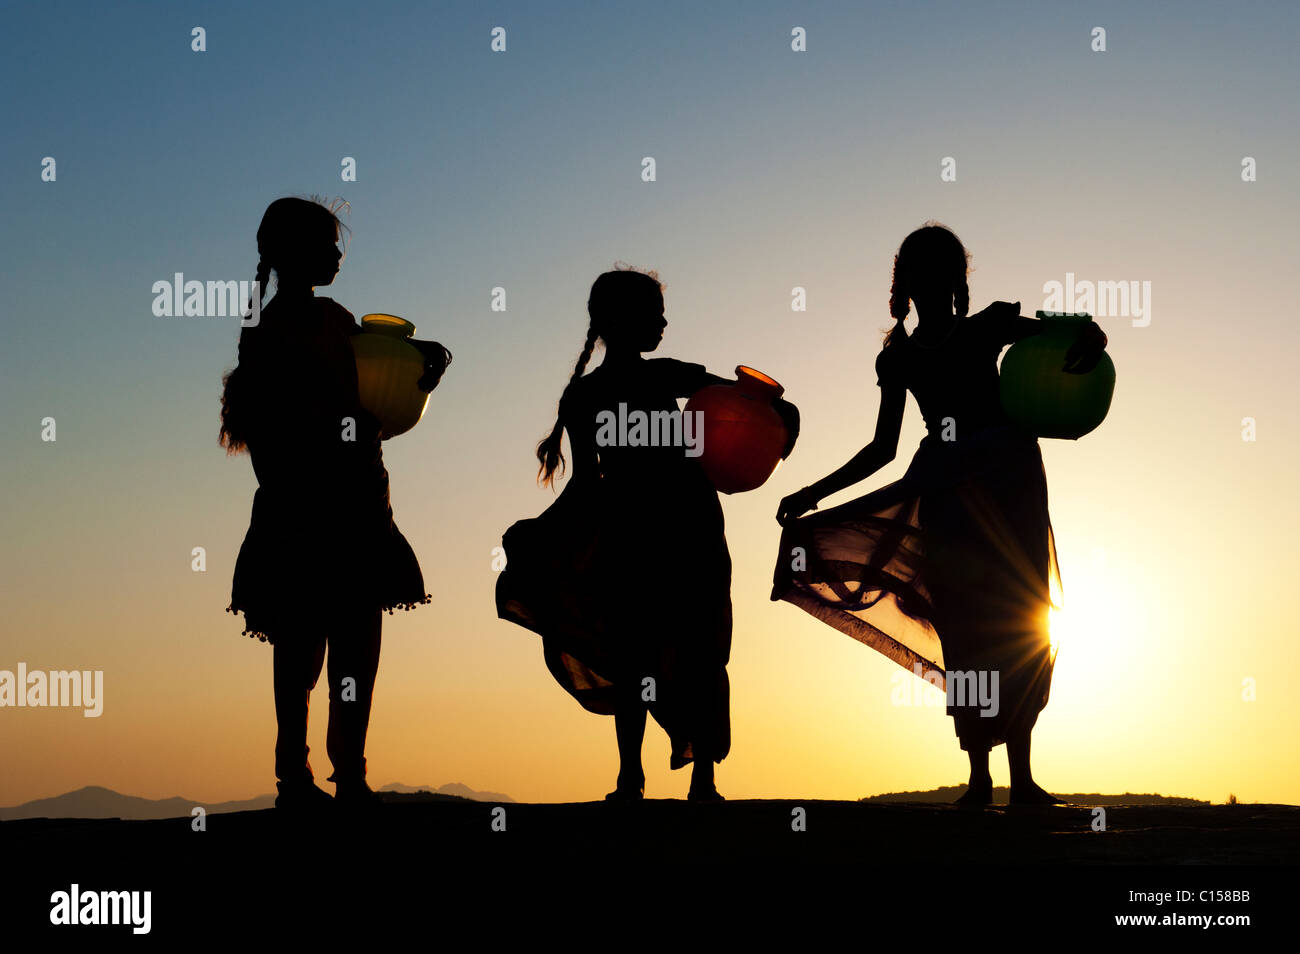 Rurale villaggio indiano ragazze con vasi d'acqua al tramonto. Silhouette. Andhra Pradesh, India Foto Stock